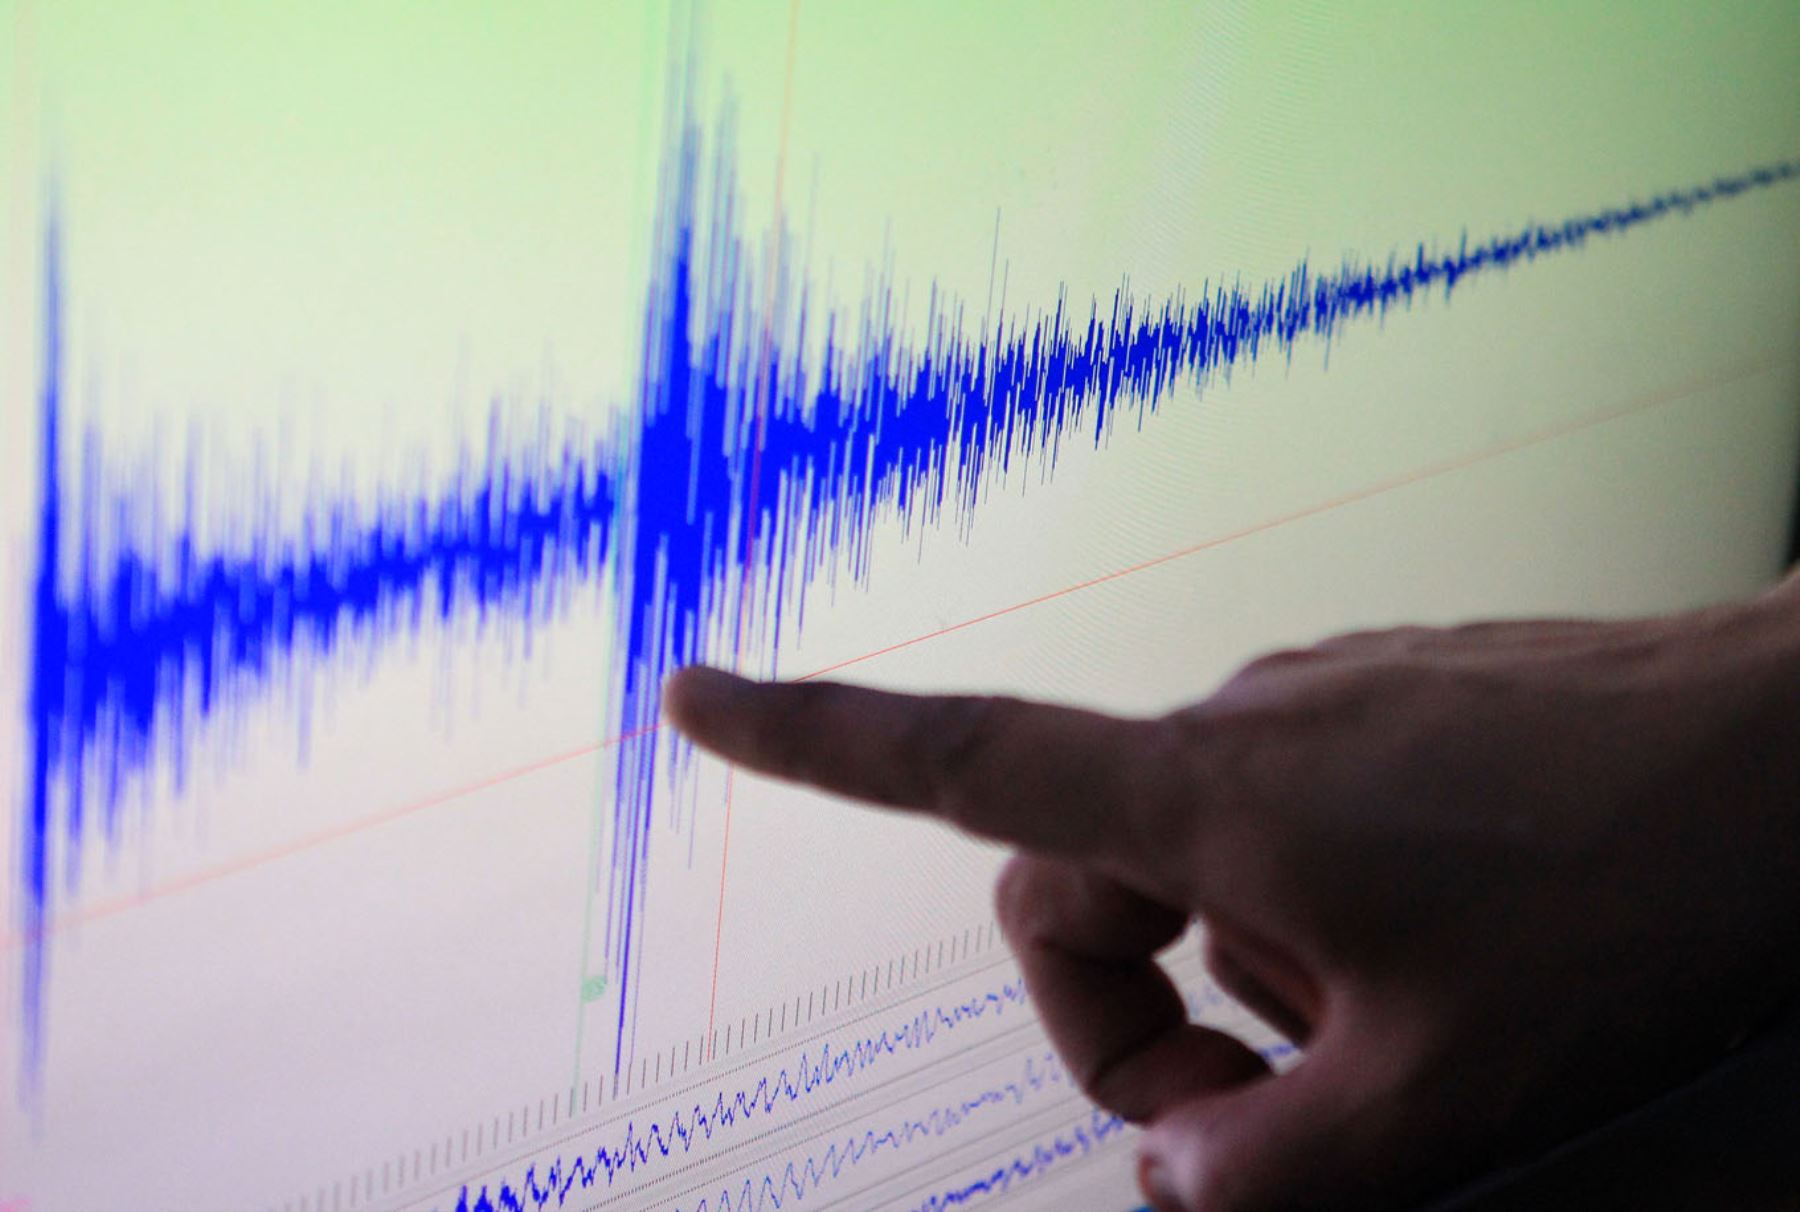 Un sismo de magnitud 5.0 remeció la región Ayacucho esta mañana